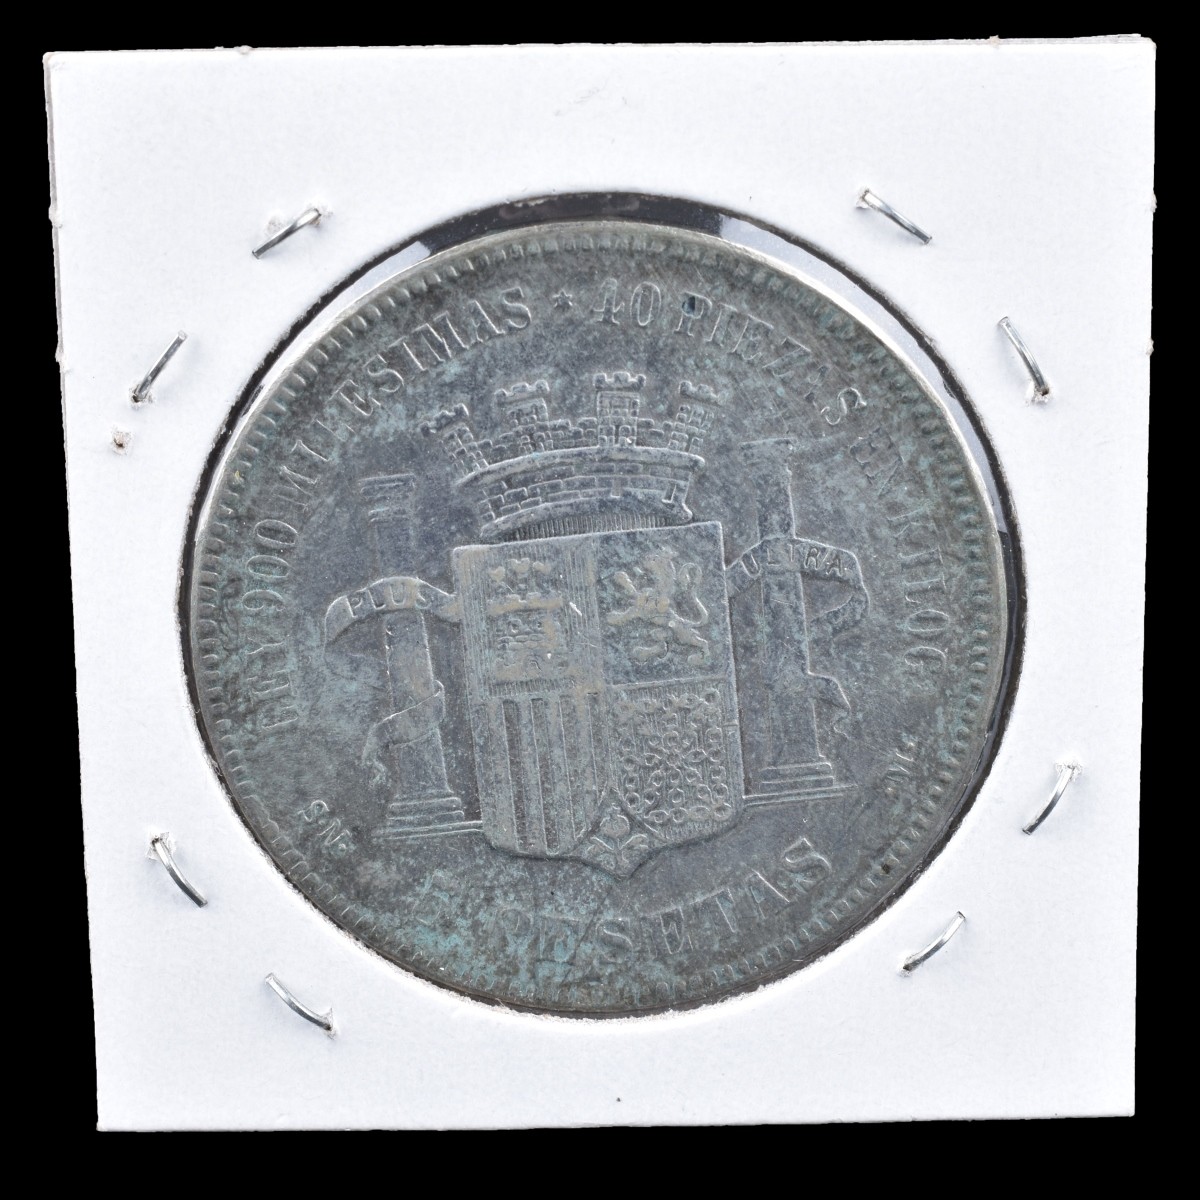 1870 Spanish Empire Silver 5 Pesetas